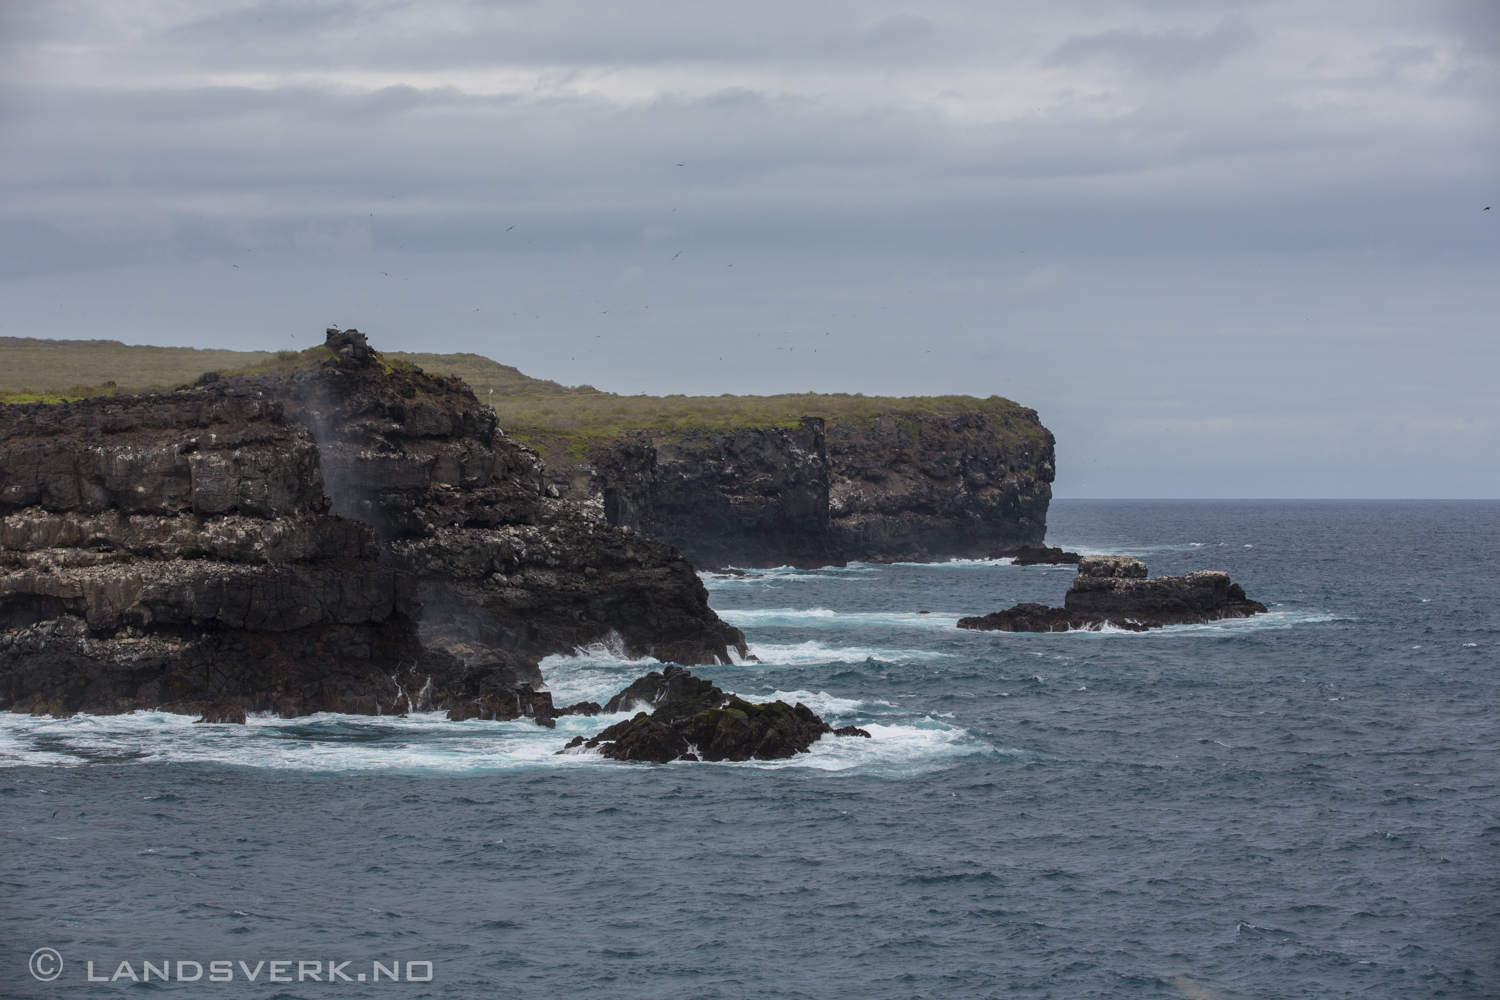 Punta Suarez, Isla Espanola, Galapagos. 

(Canon EOS 5D Mark III / Canon EF 70-200mm f/2.8 L IS II USM)